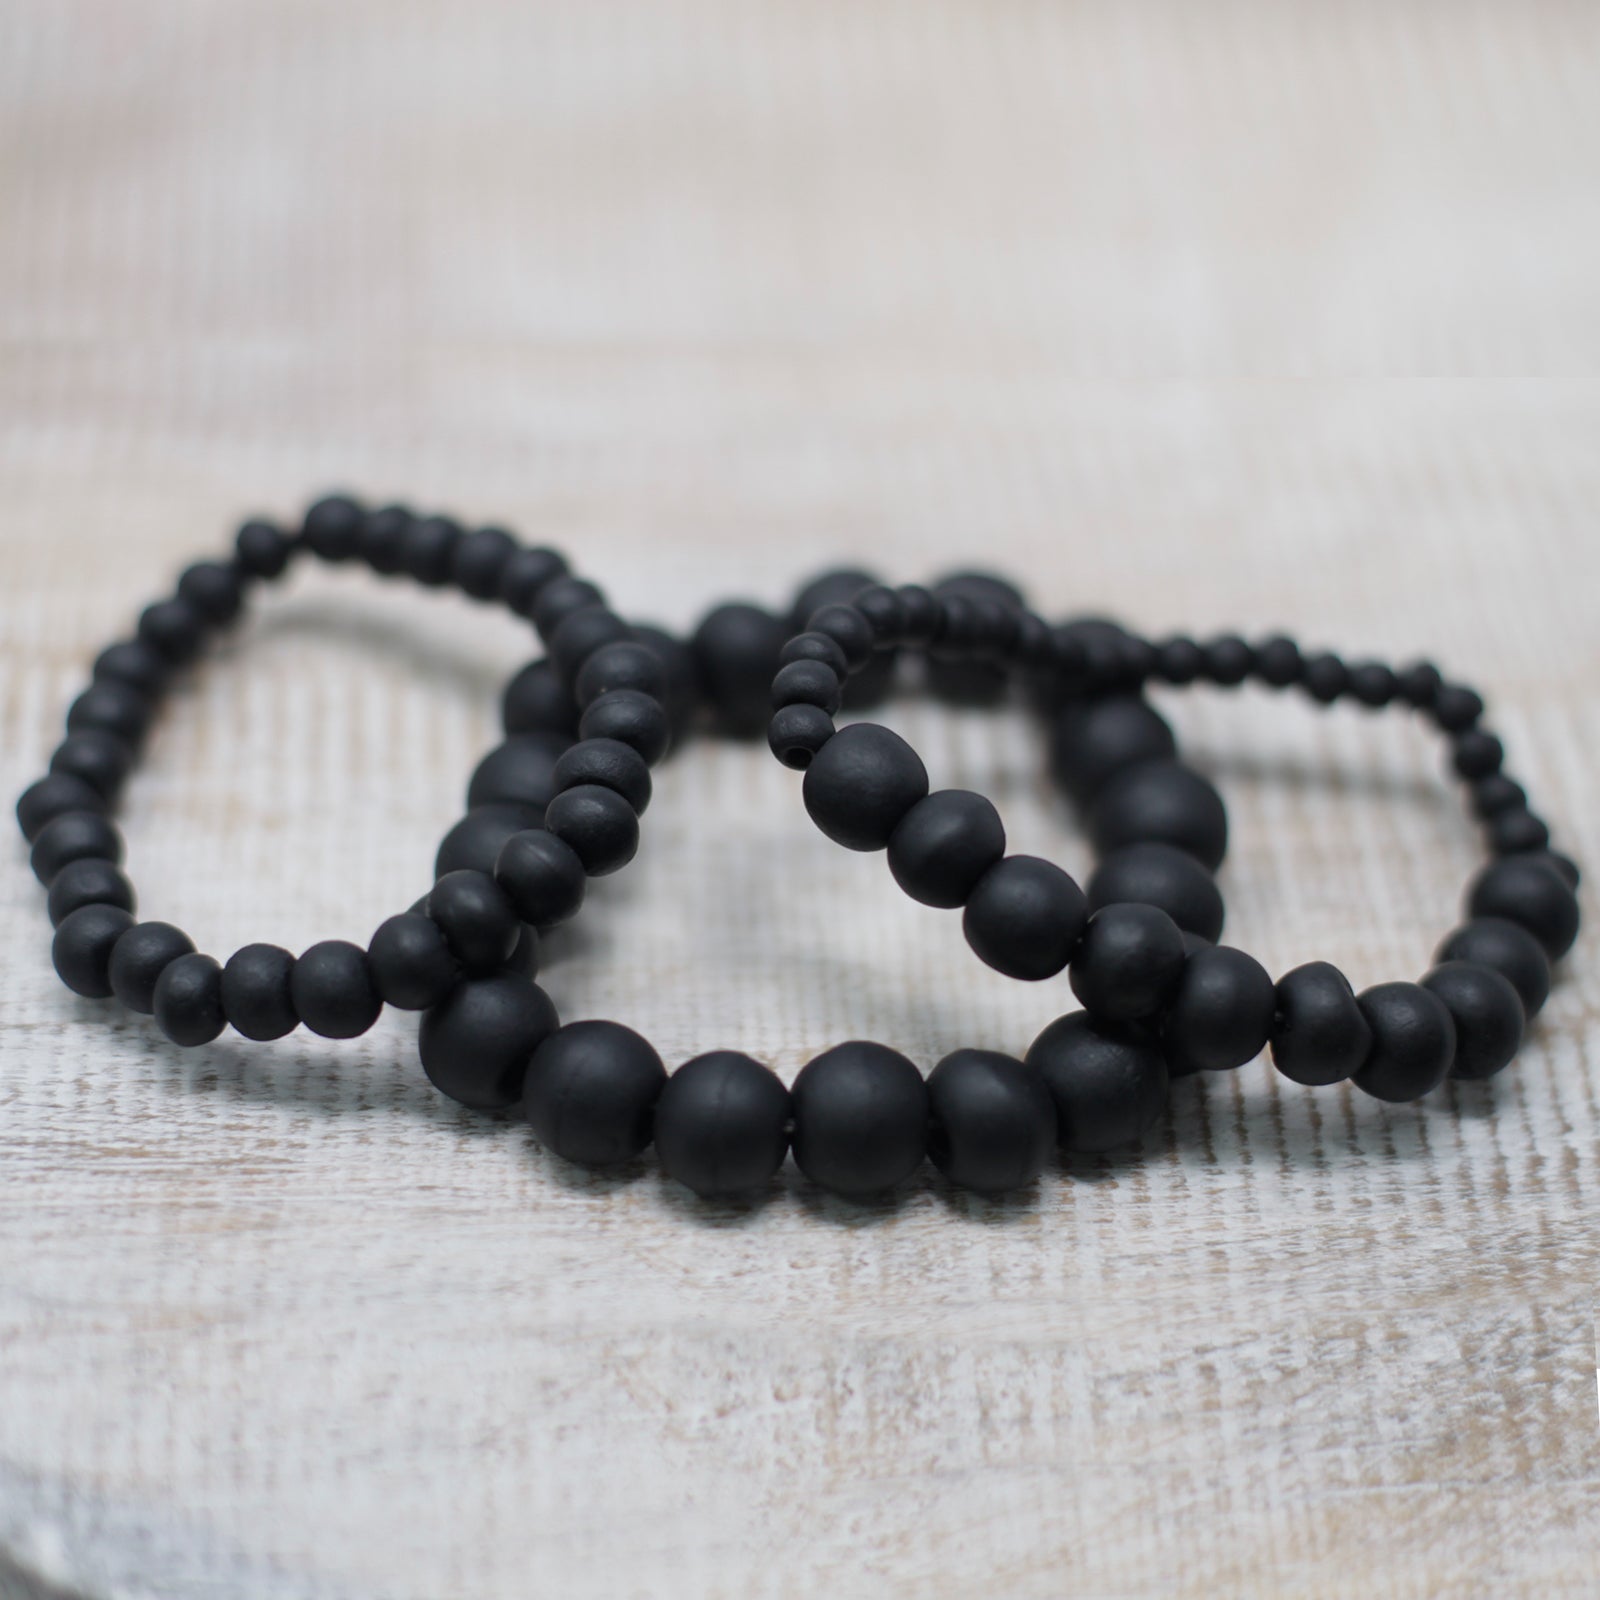 Blackwood Beads - Assorted Sizes